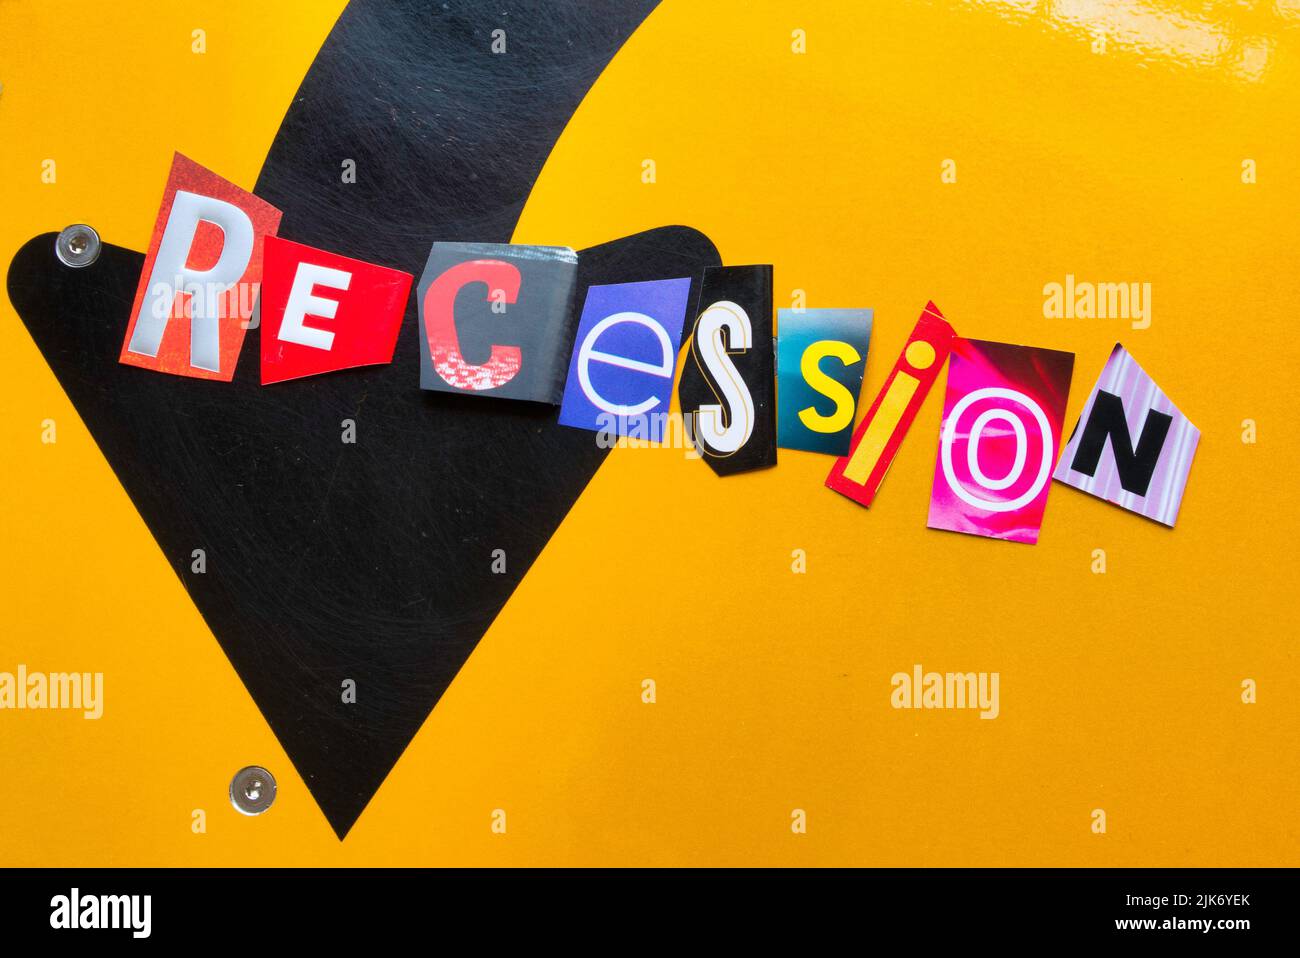 La parola 'recessione' è scritto in ransom nota stile tipografia, USA 2022 Foto Stock